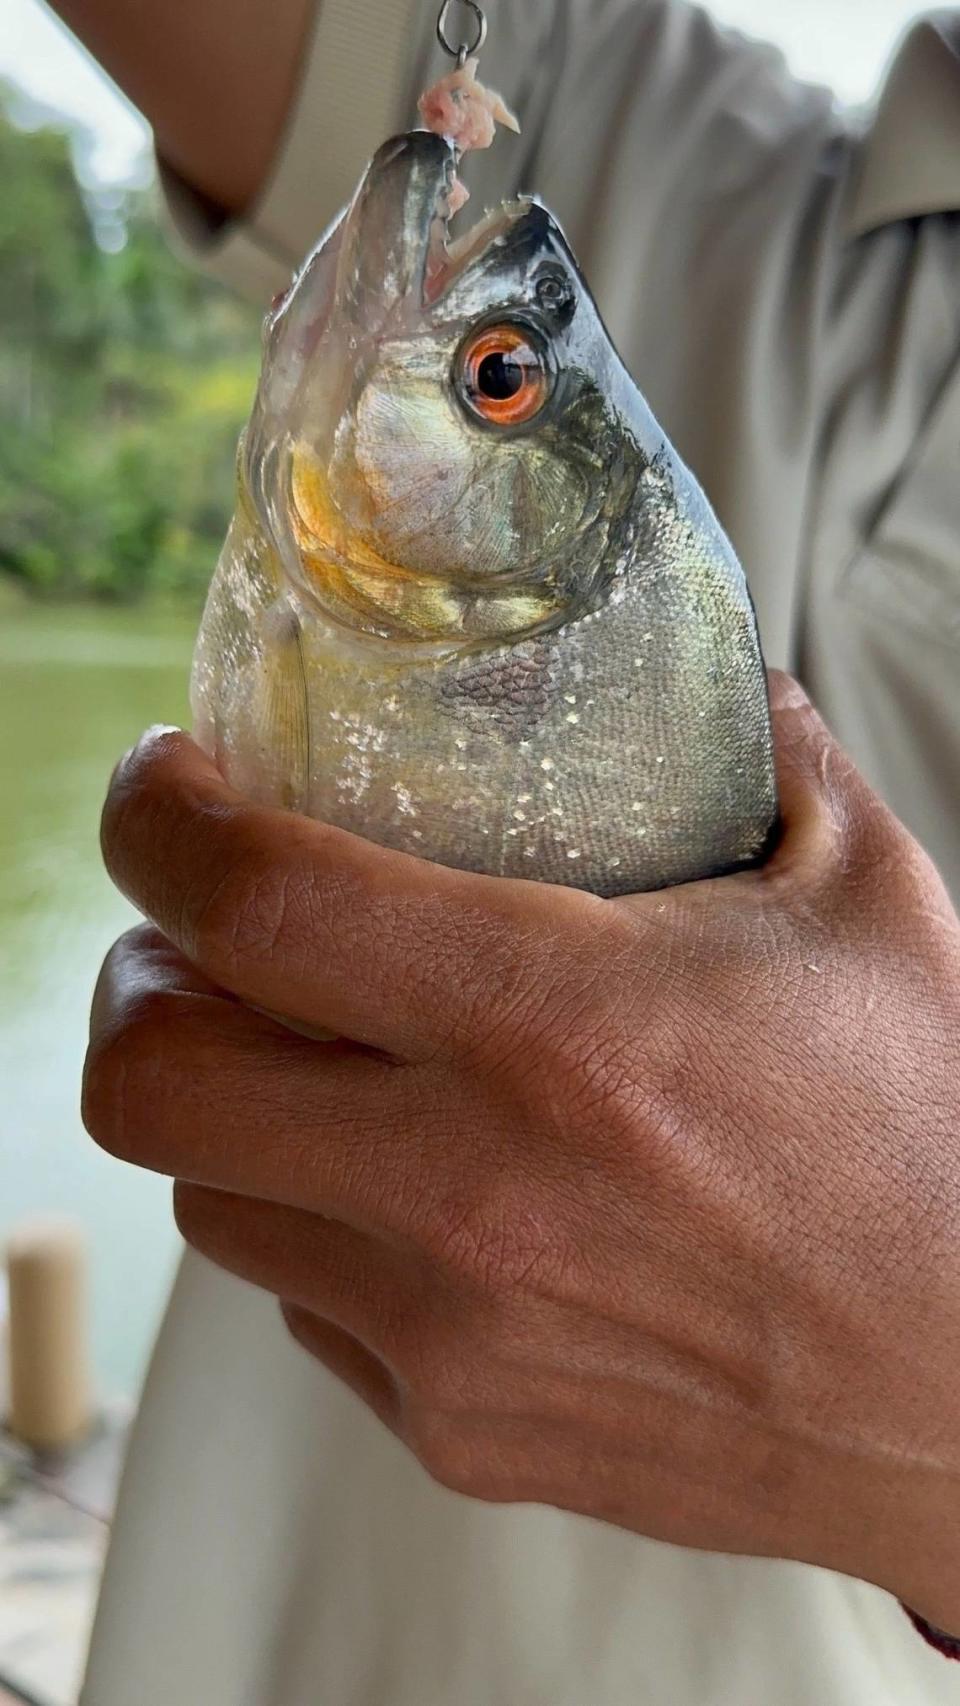 Piraña, pez agresivo y de mala fama, del Amazonas.